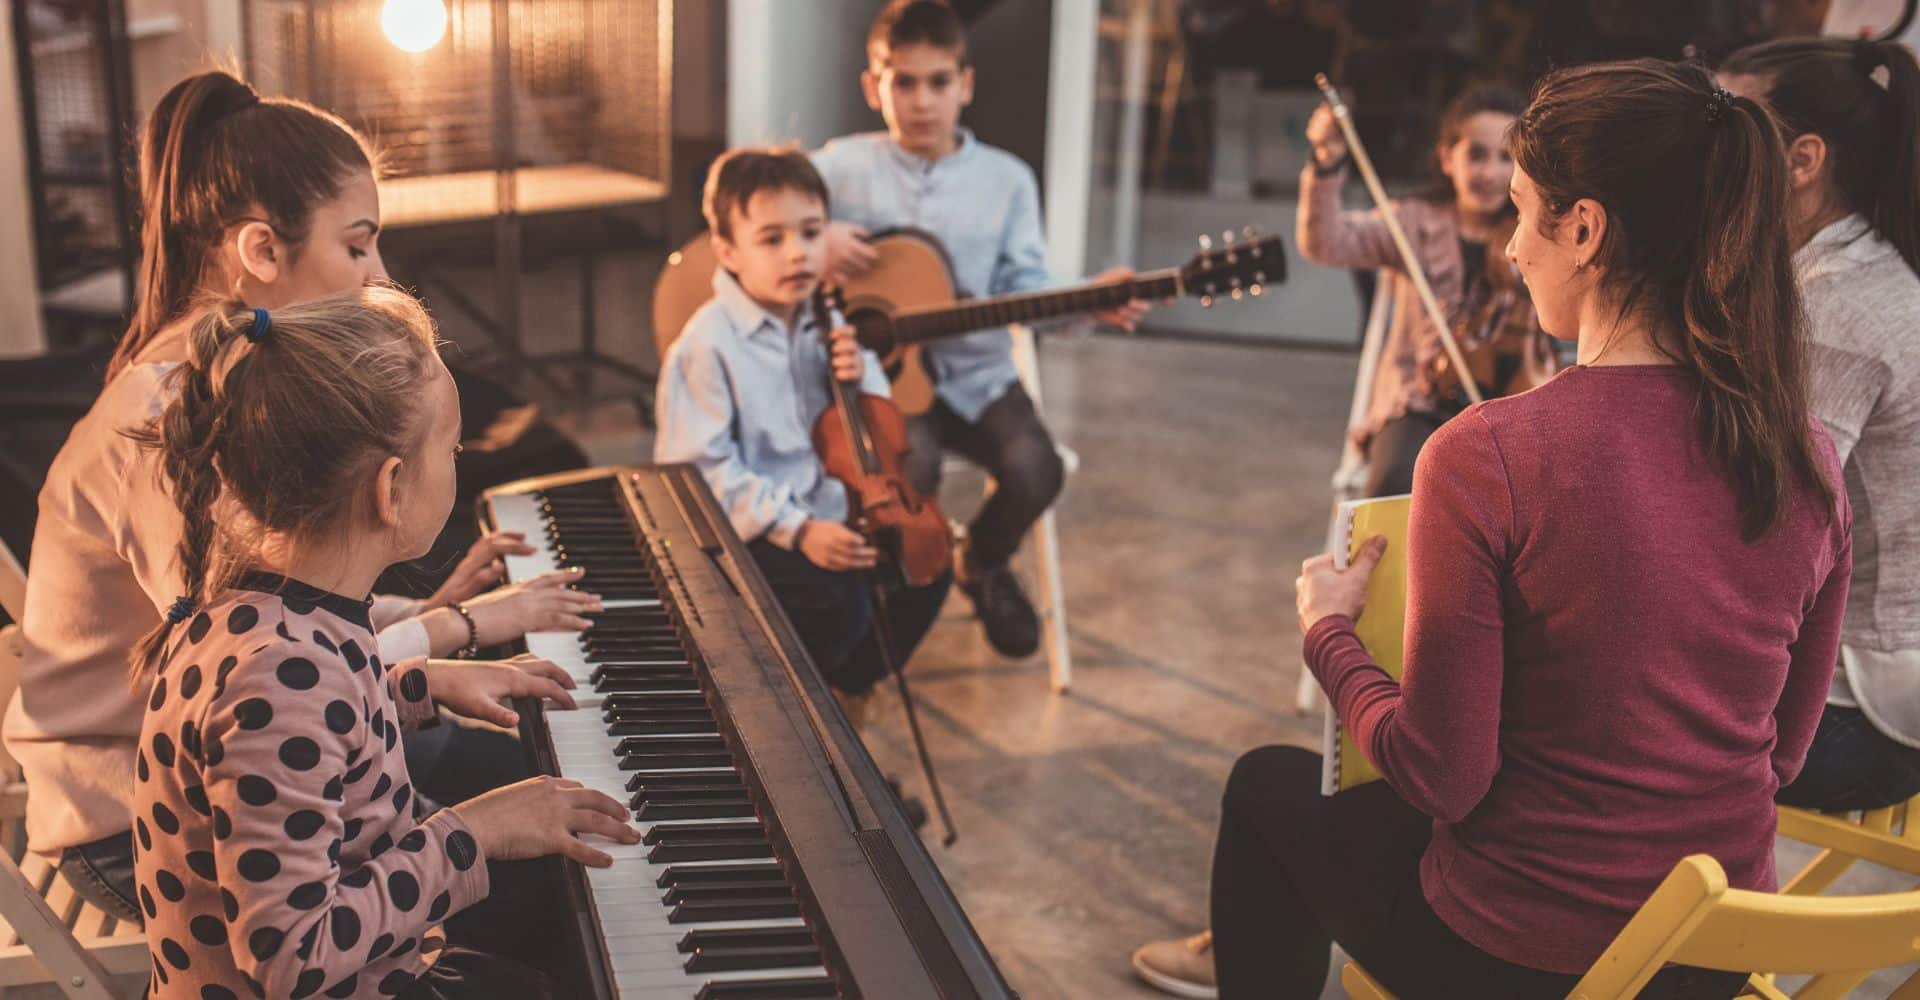 A teacher teaching a music class to young kids.